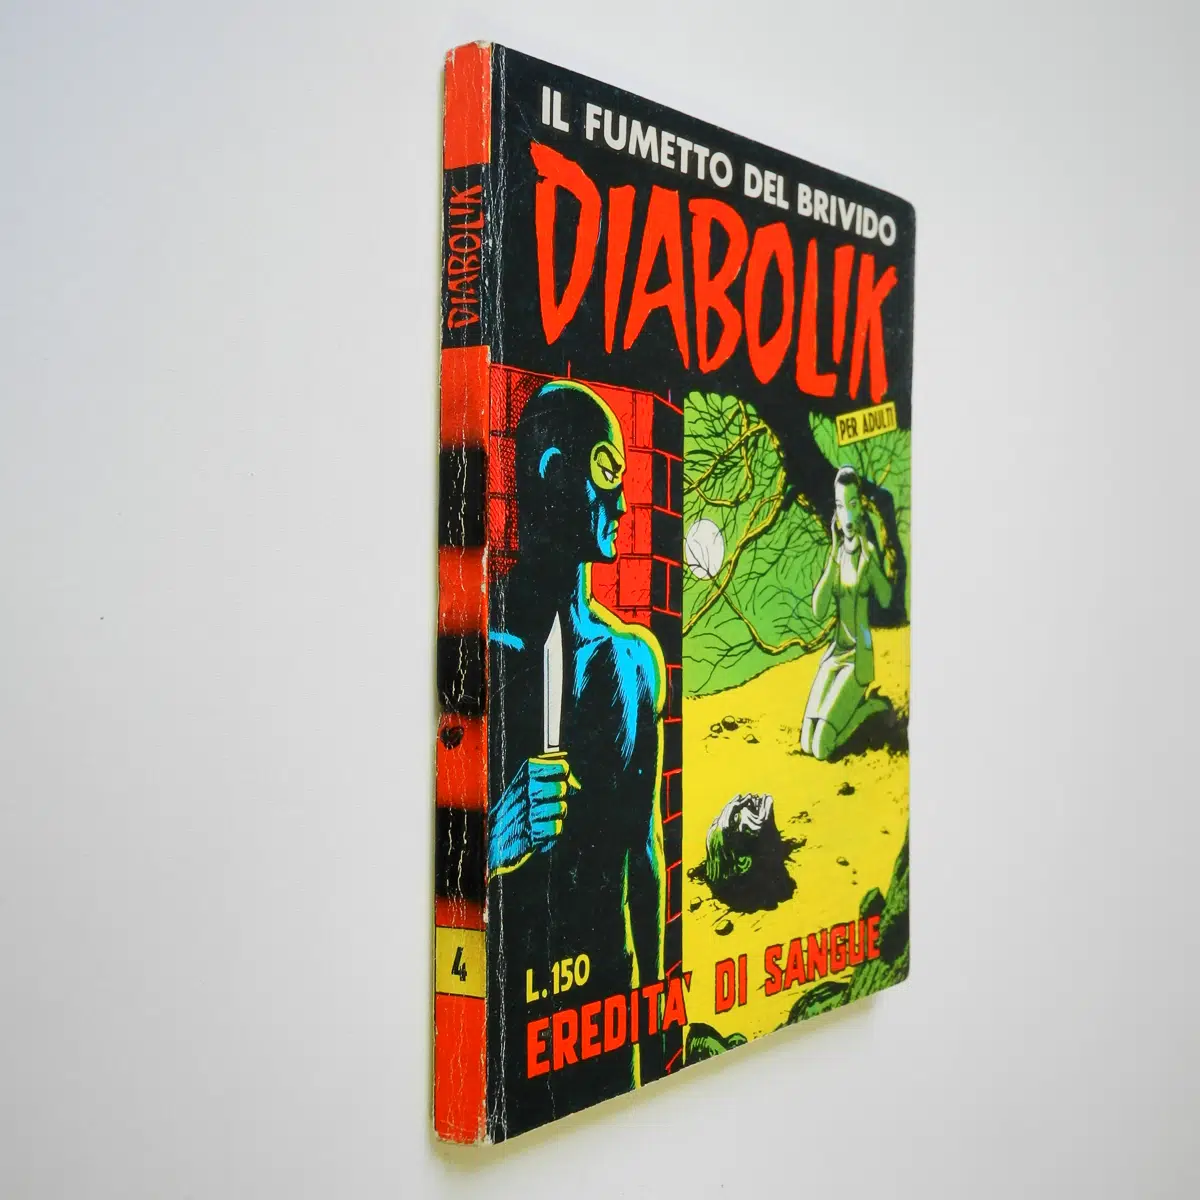 Diabolik Seconda Serie n. 4 Eredità di Sangue edizioni Astorina Sodip